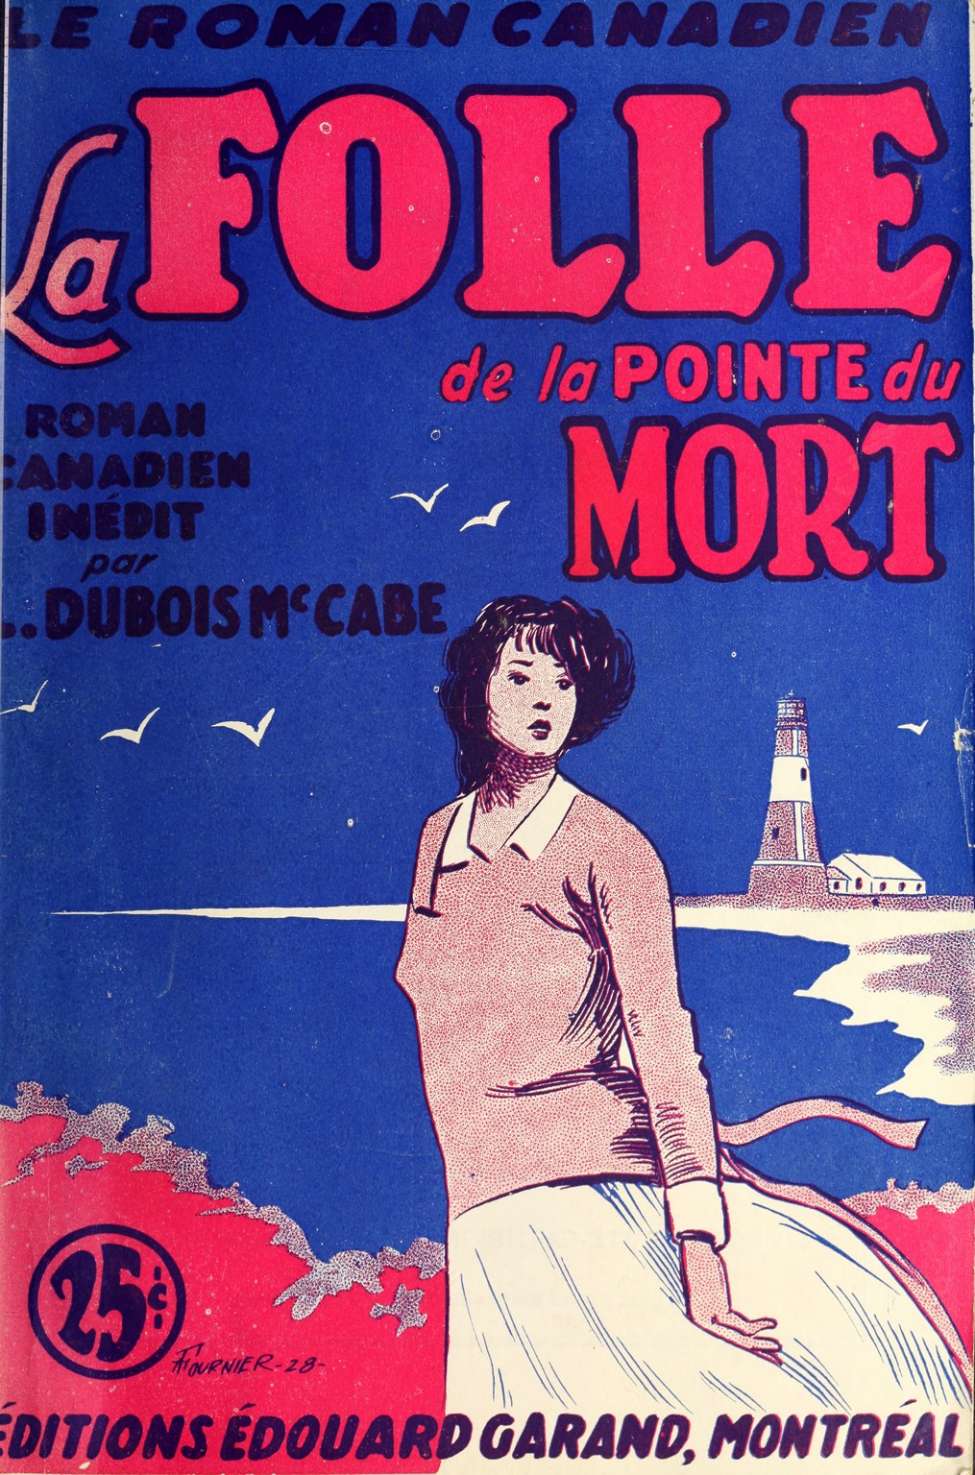 Book Cover For Le Roman Canadien 49 - La folle de la Pointe du mort